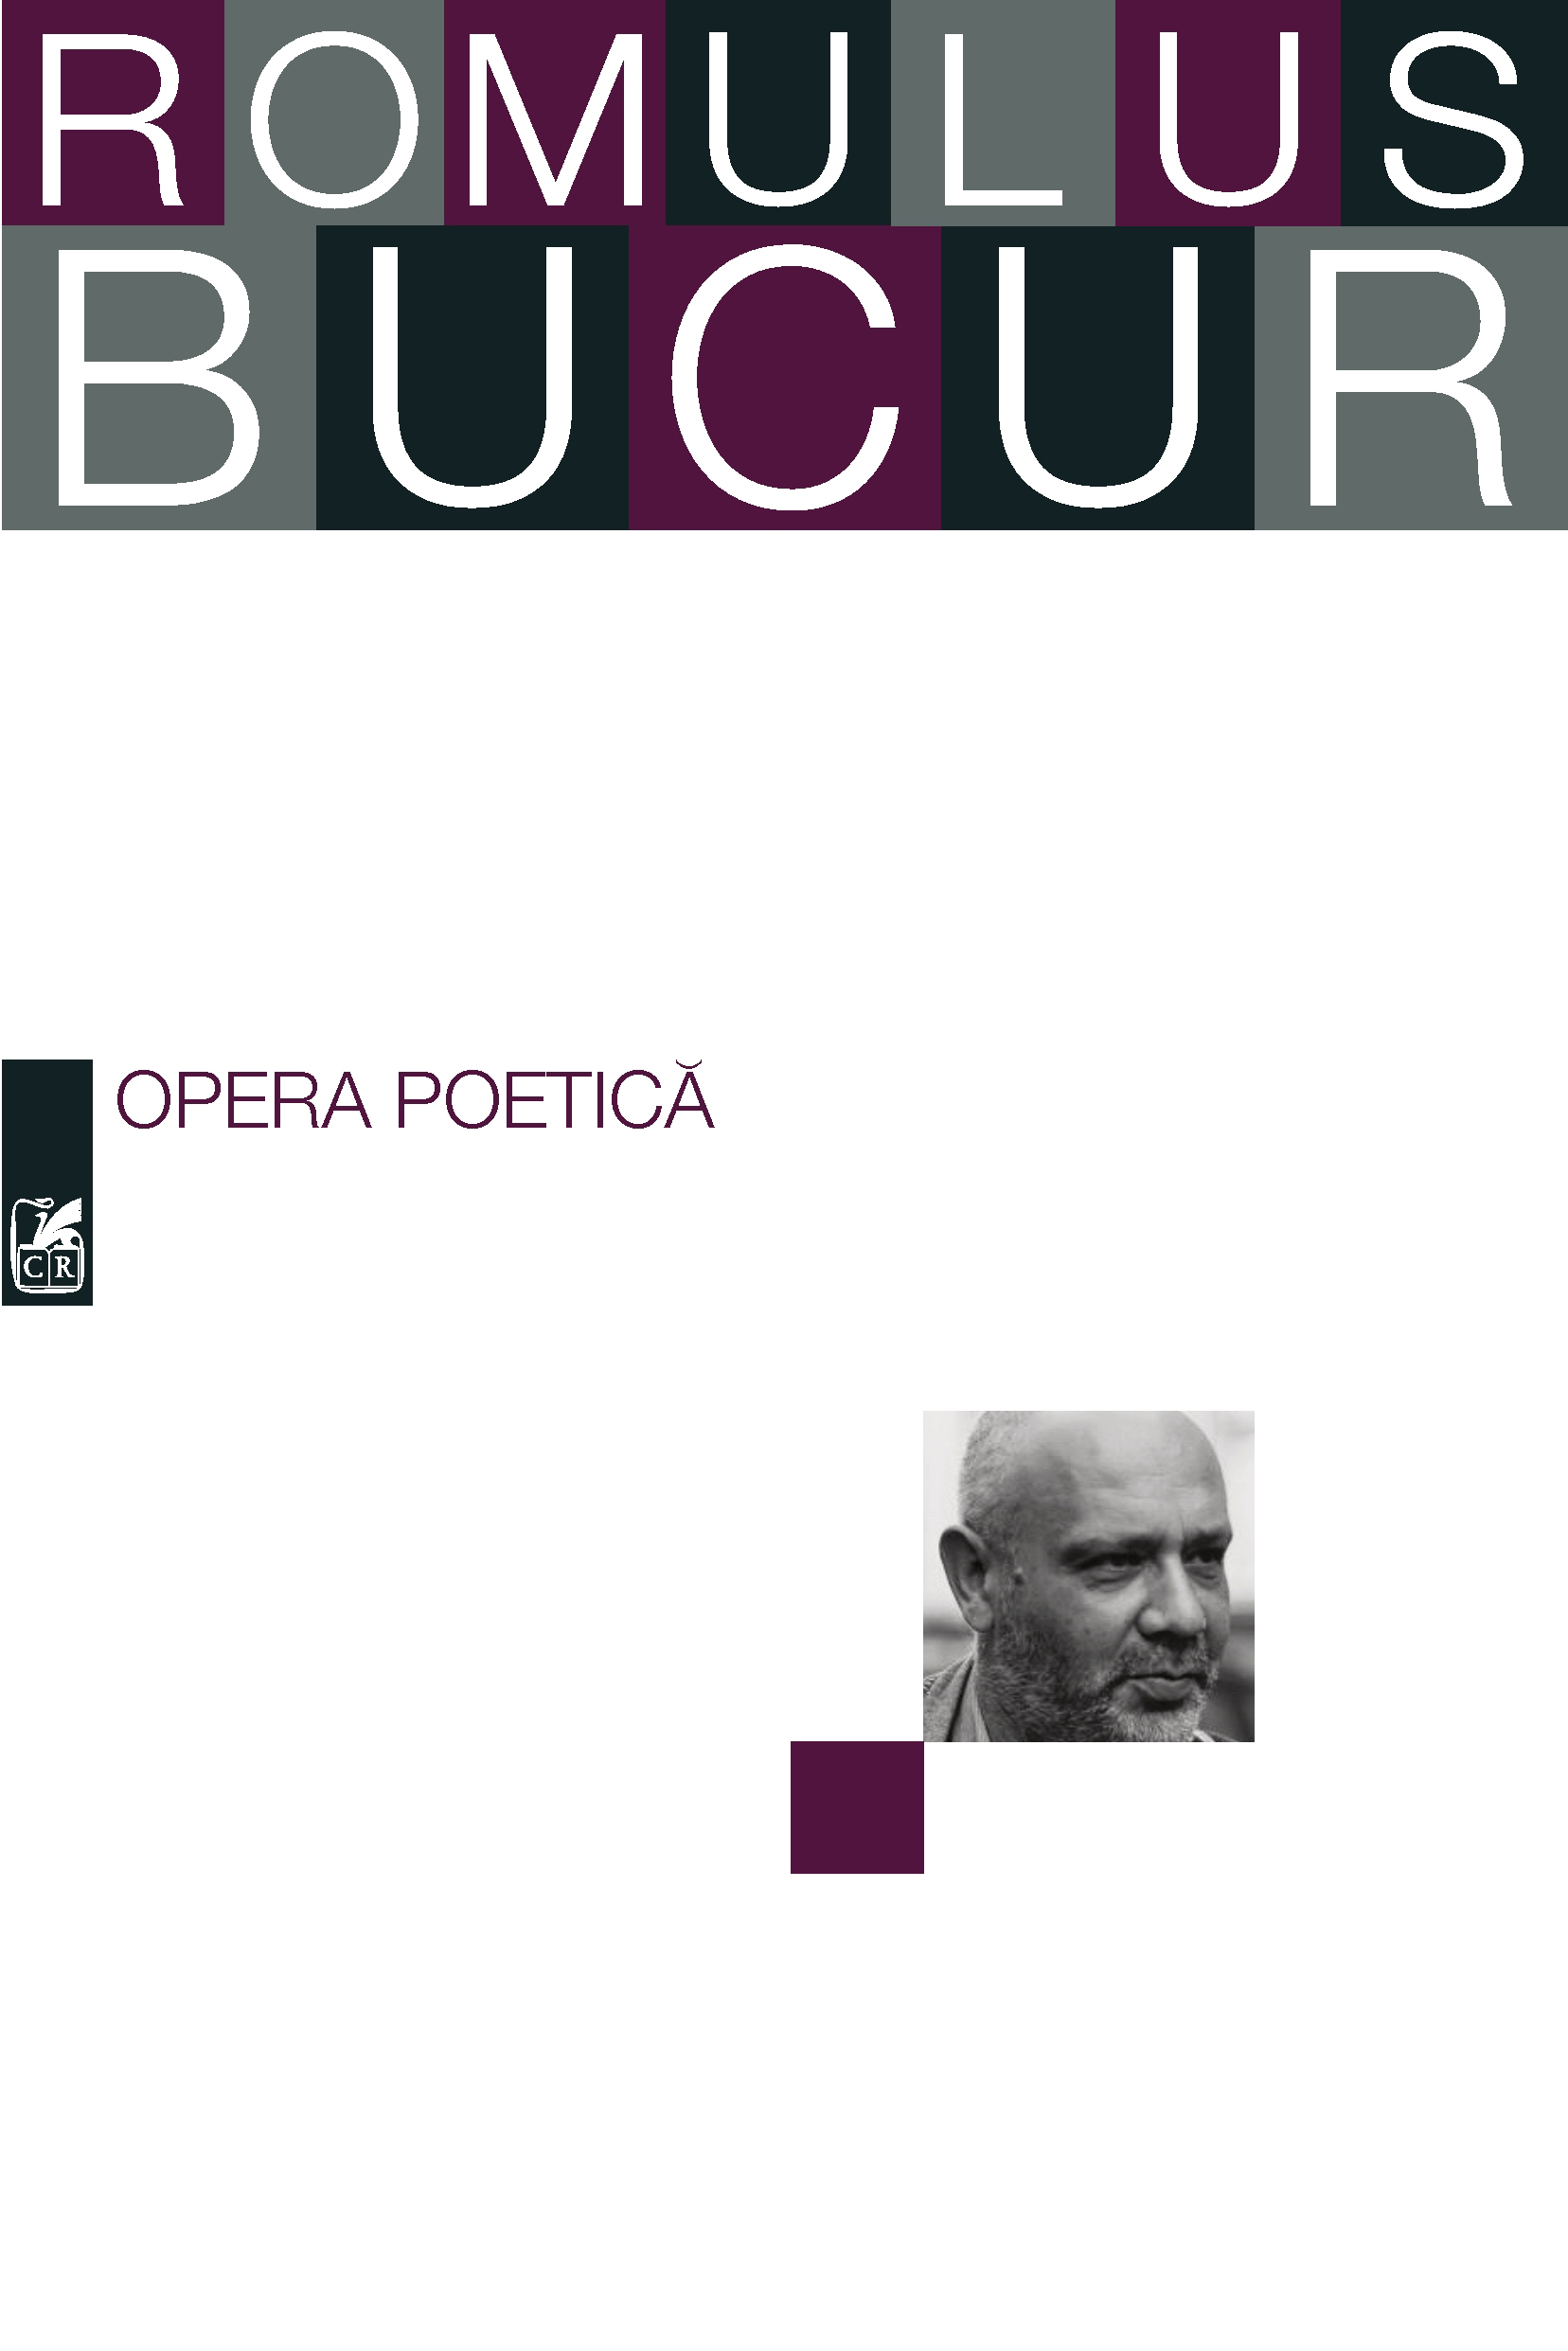 Opera poetica | Romulus Bucur Bucur imagine 2022